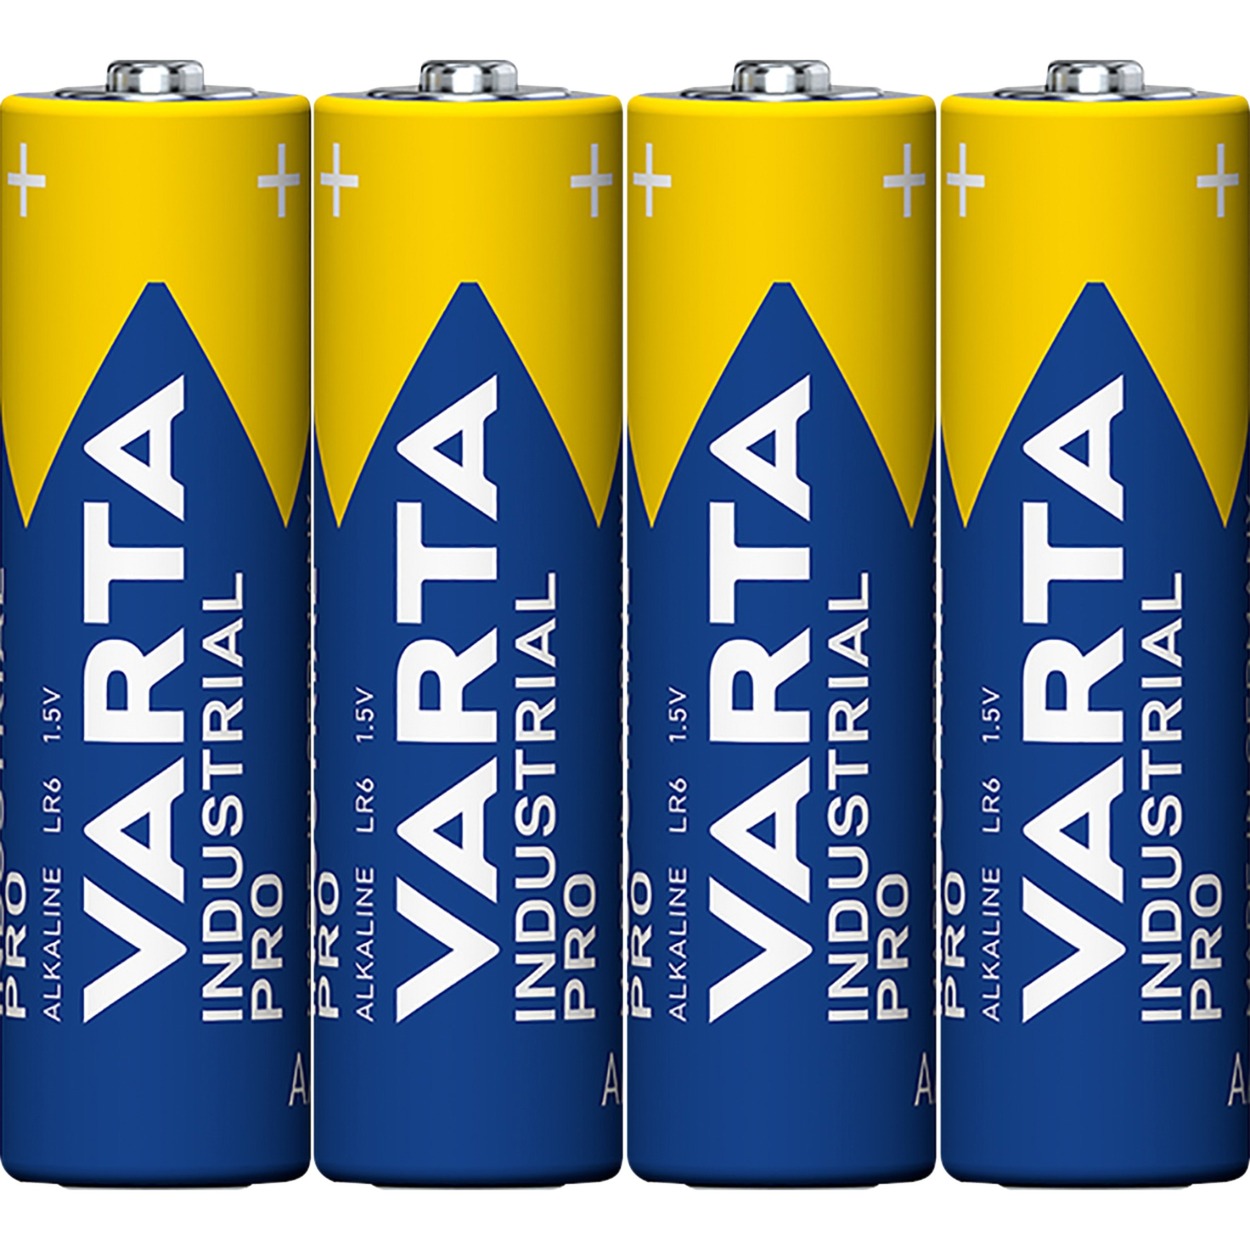 Industrial, Batterie von Varta